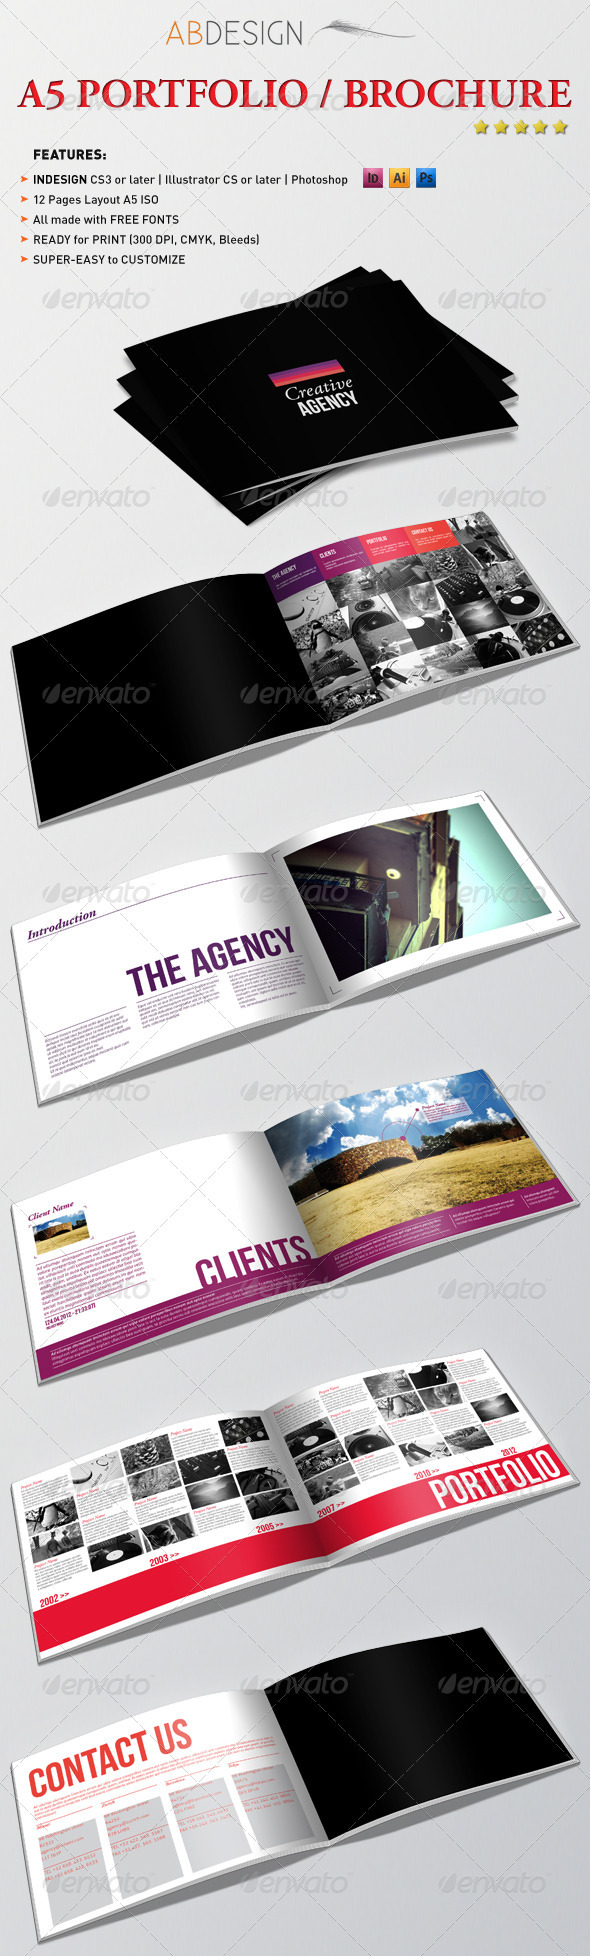 A5 Portfolio Brochure | GraphicRiver